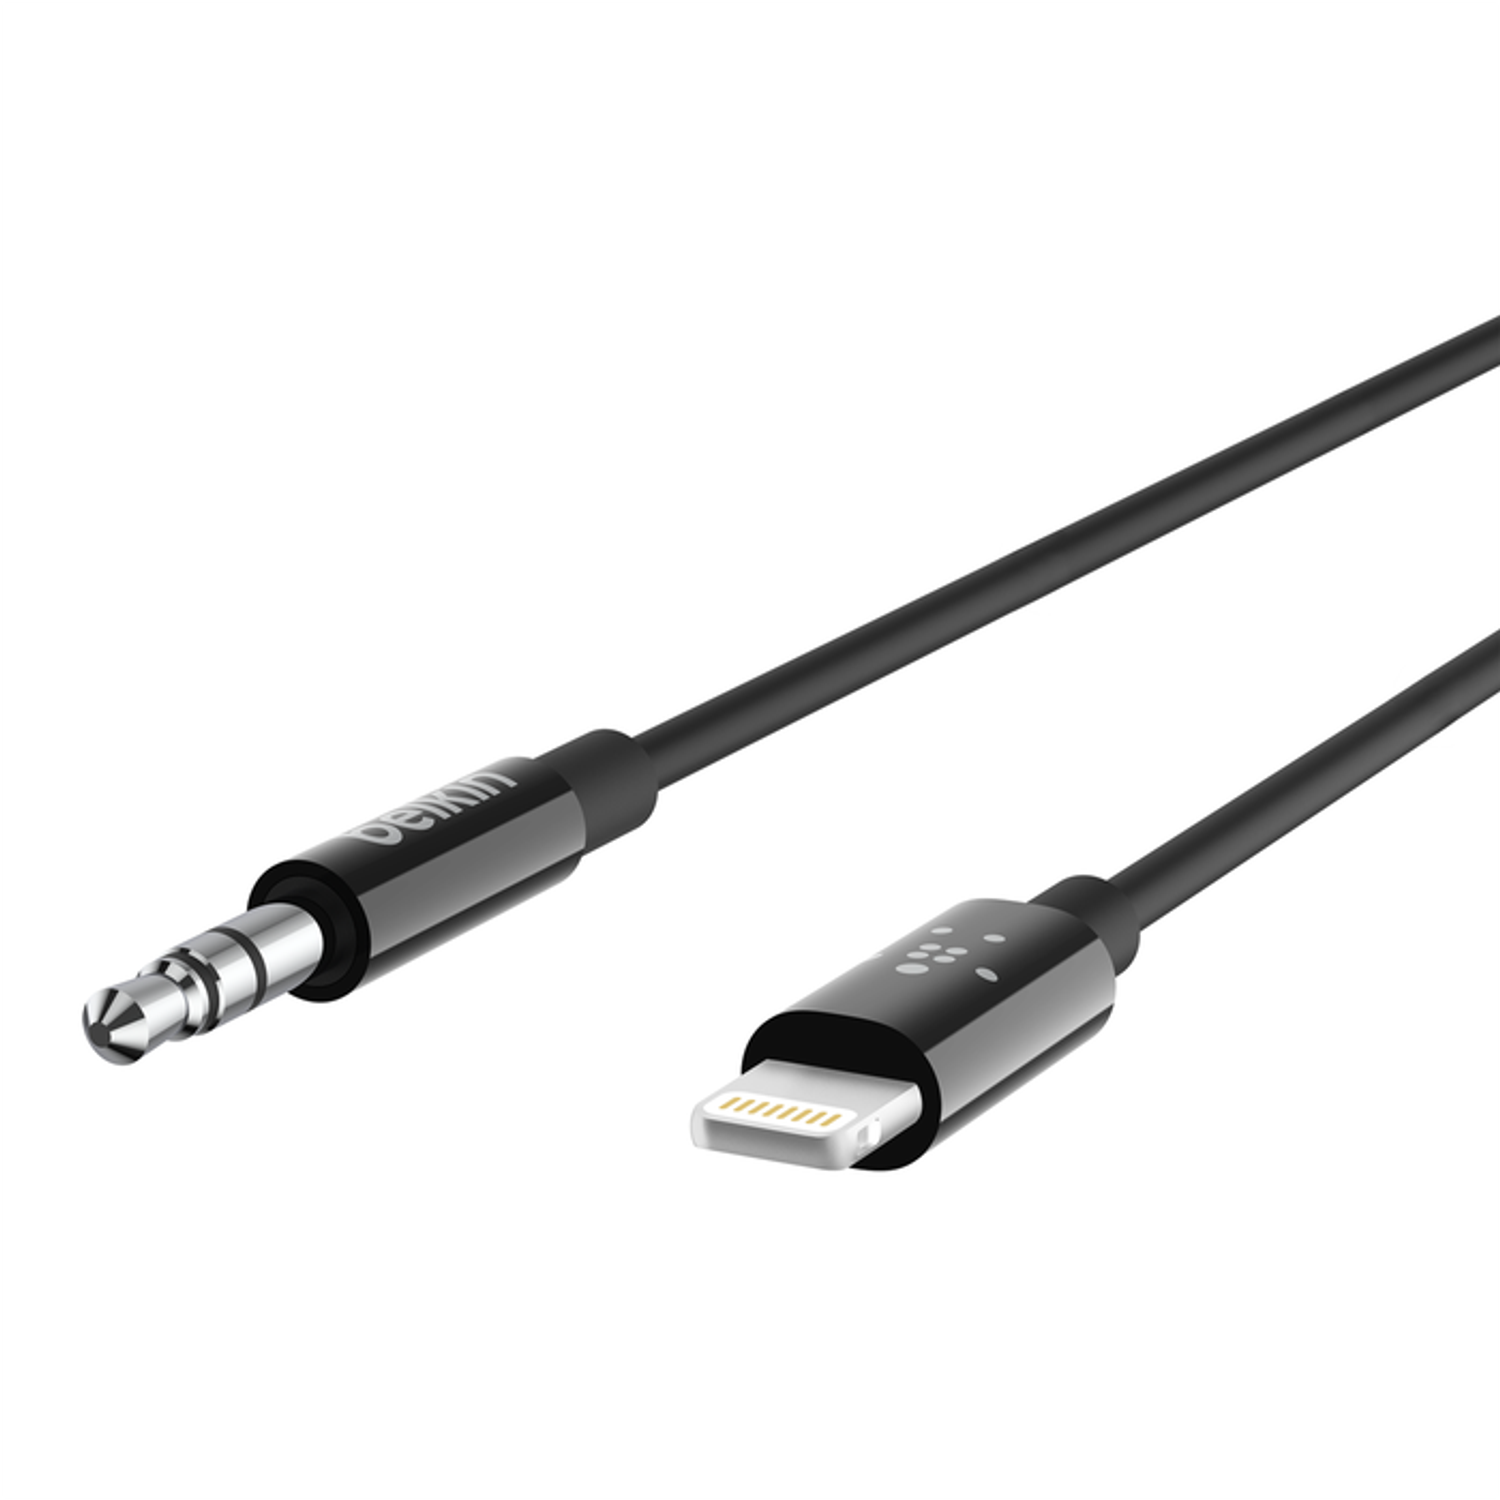 Cable de Audio de 3,5 mm con conector Lightning